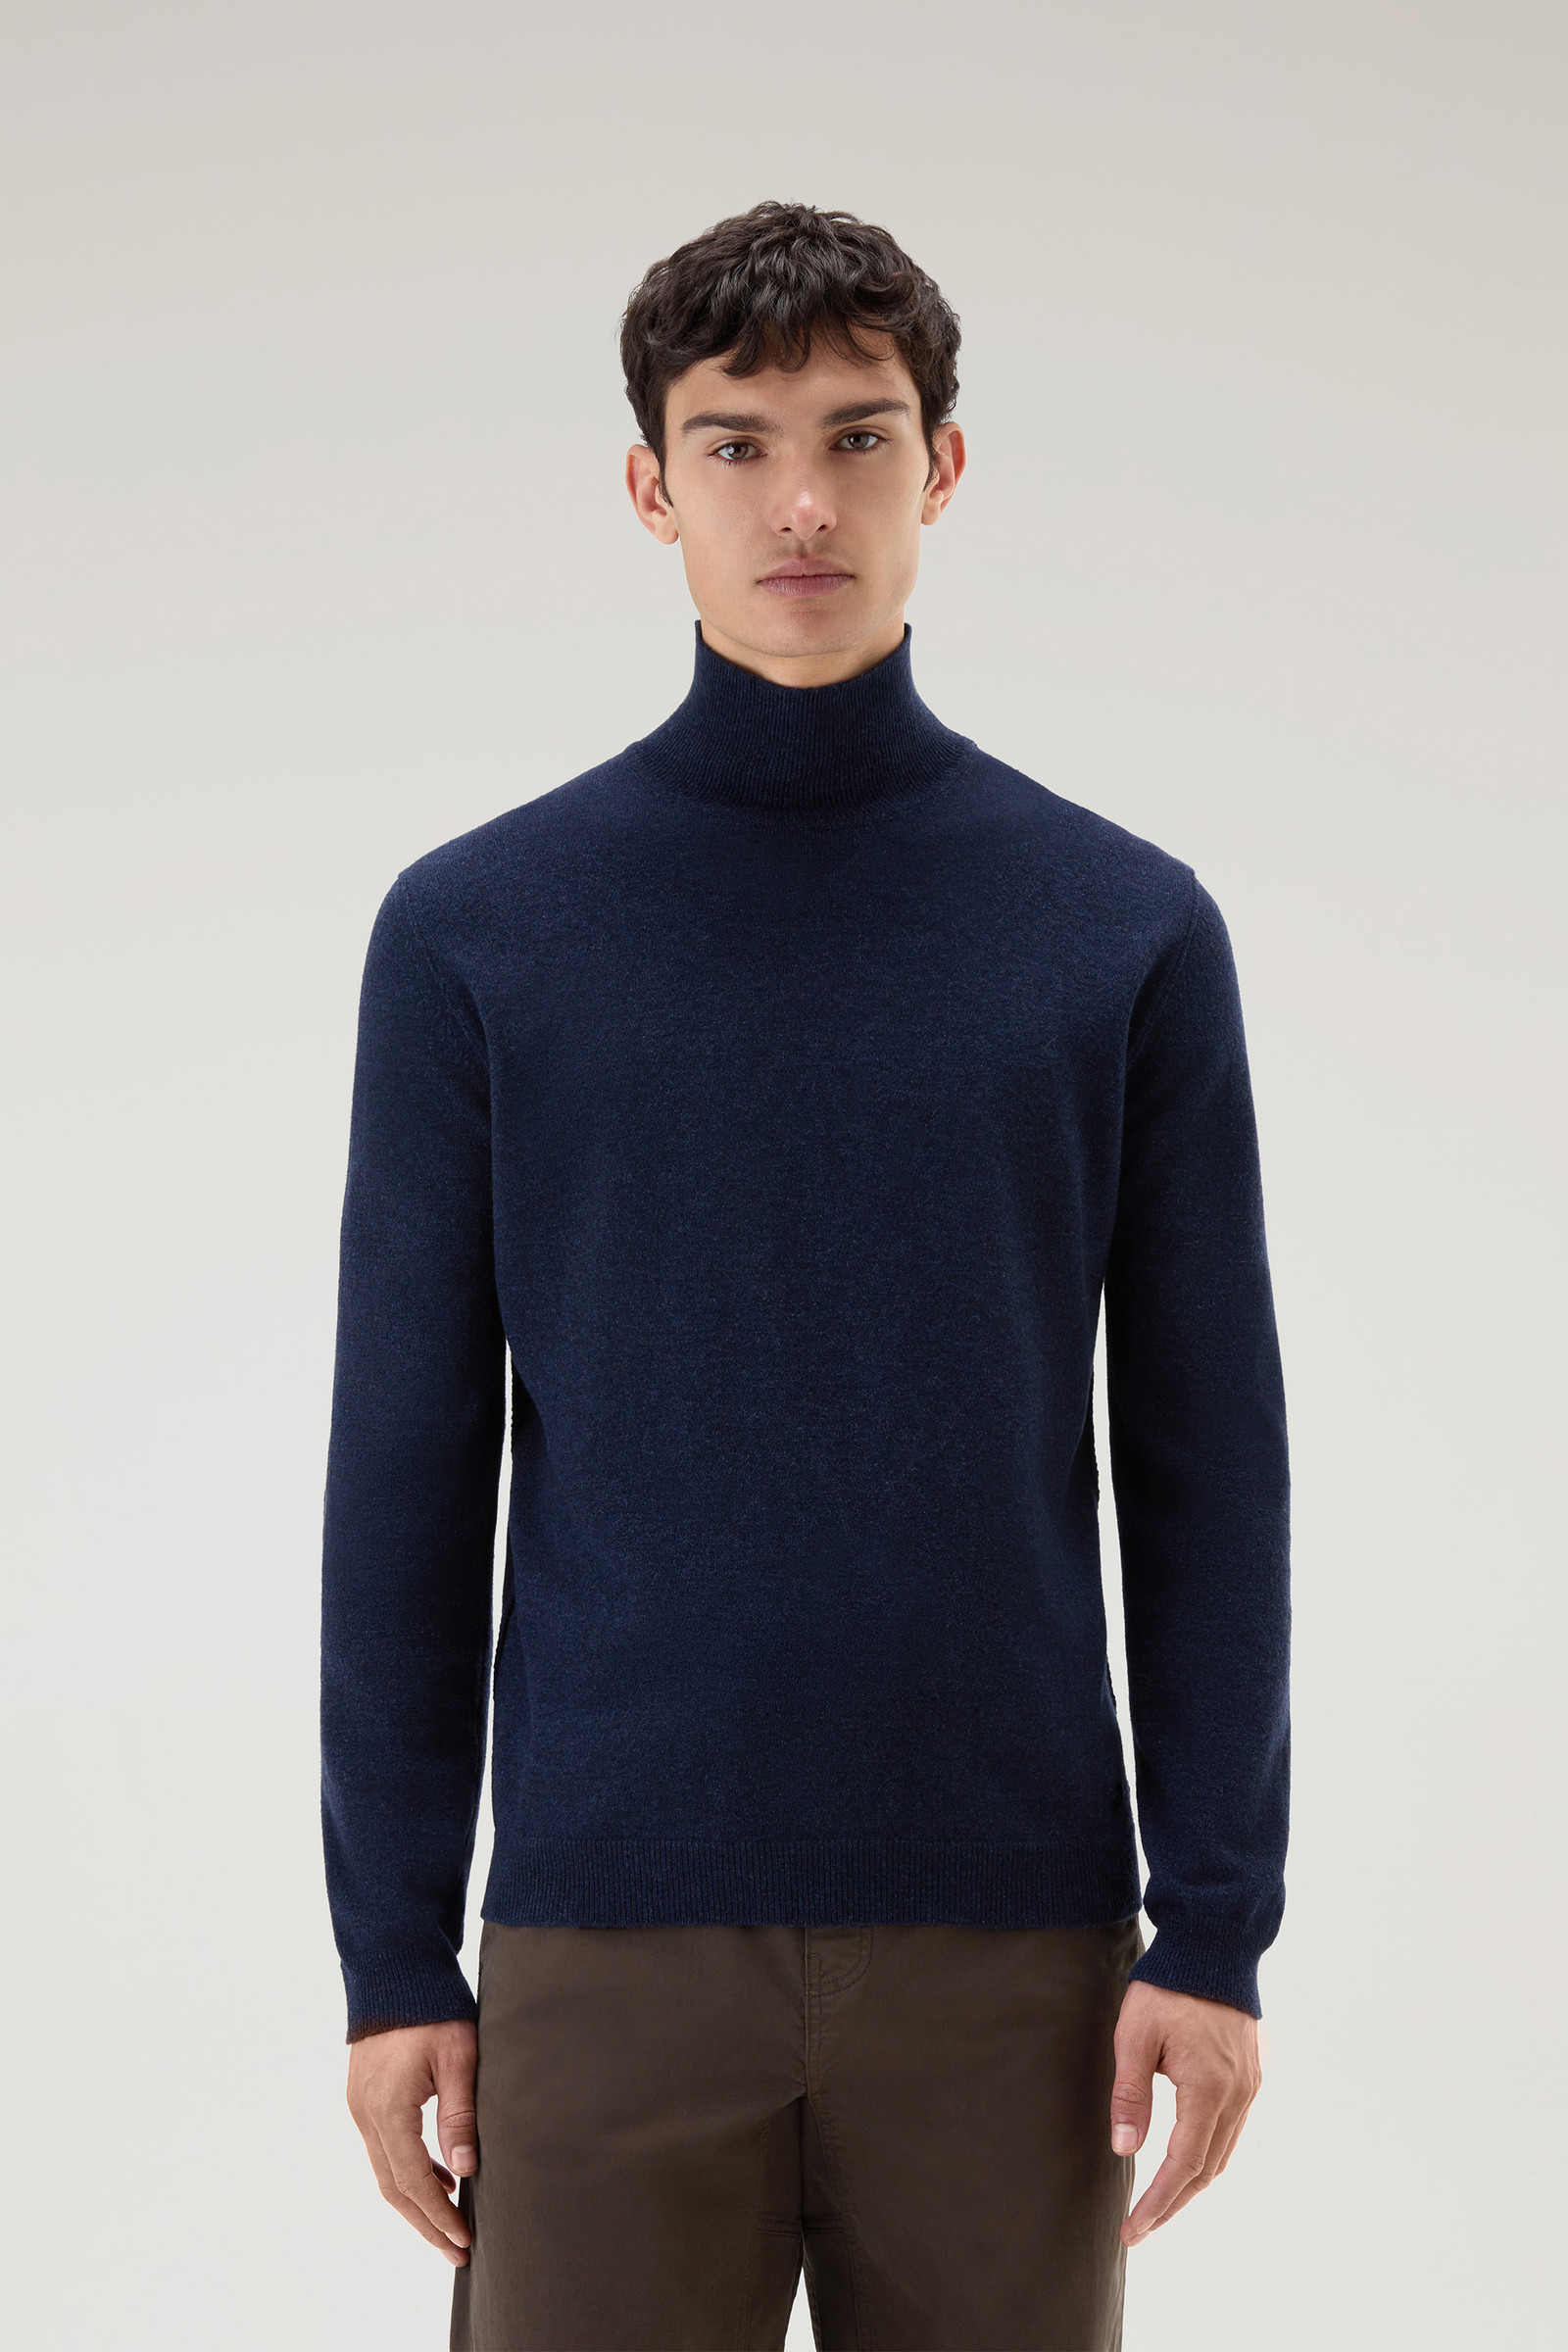 Men's Turtleneck Sweater in Merino Wool Blend Blue | Woolrich USA